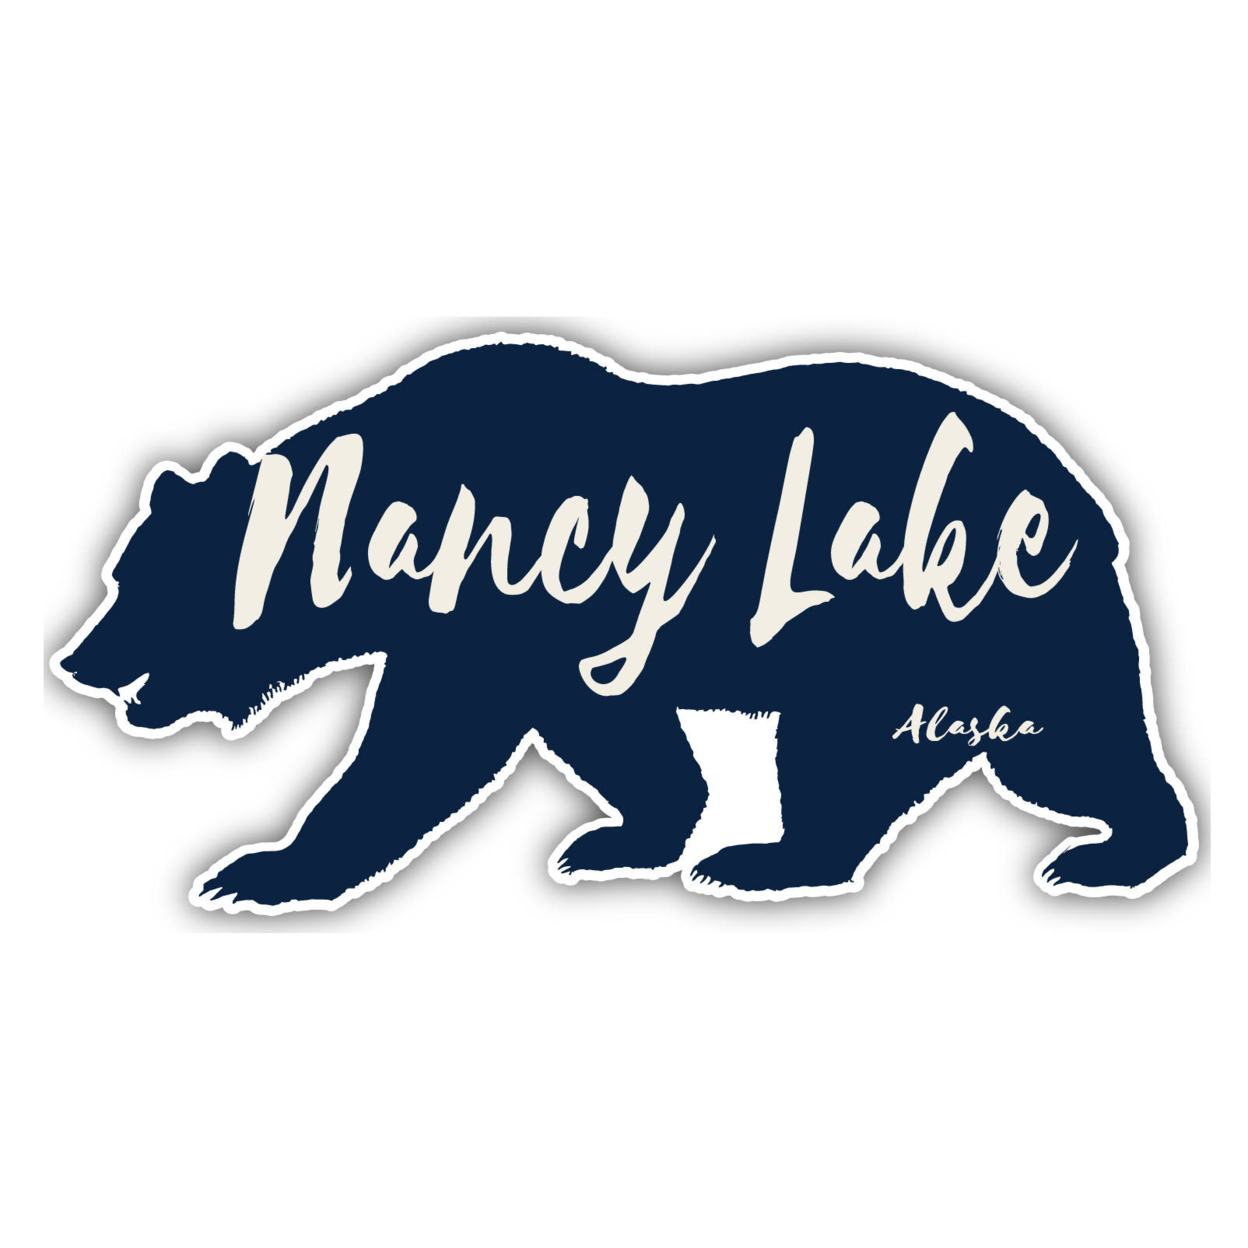 Nancy Lake Alaska Souvenir Decorative Stickers (Choose Theme And Size) - Single Unit, 2-Inch, Bear